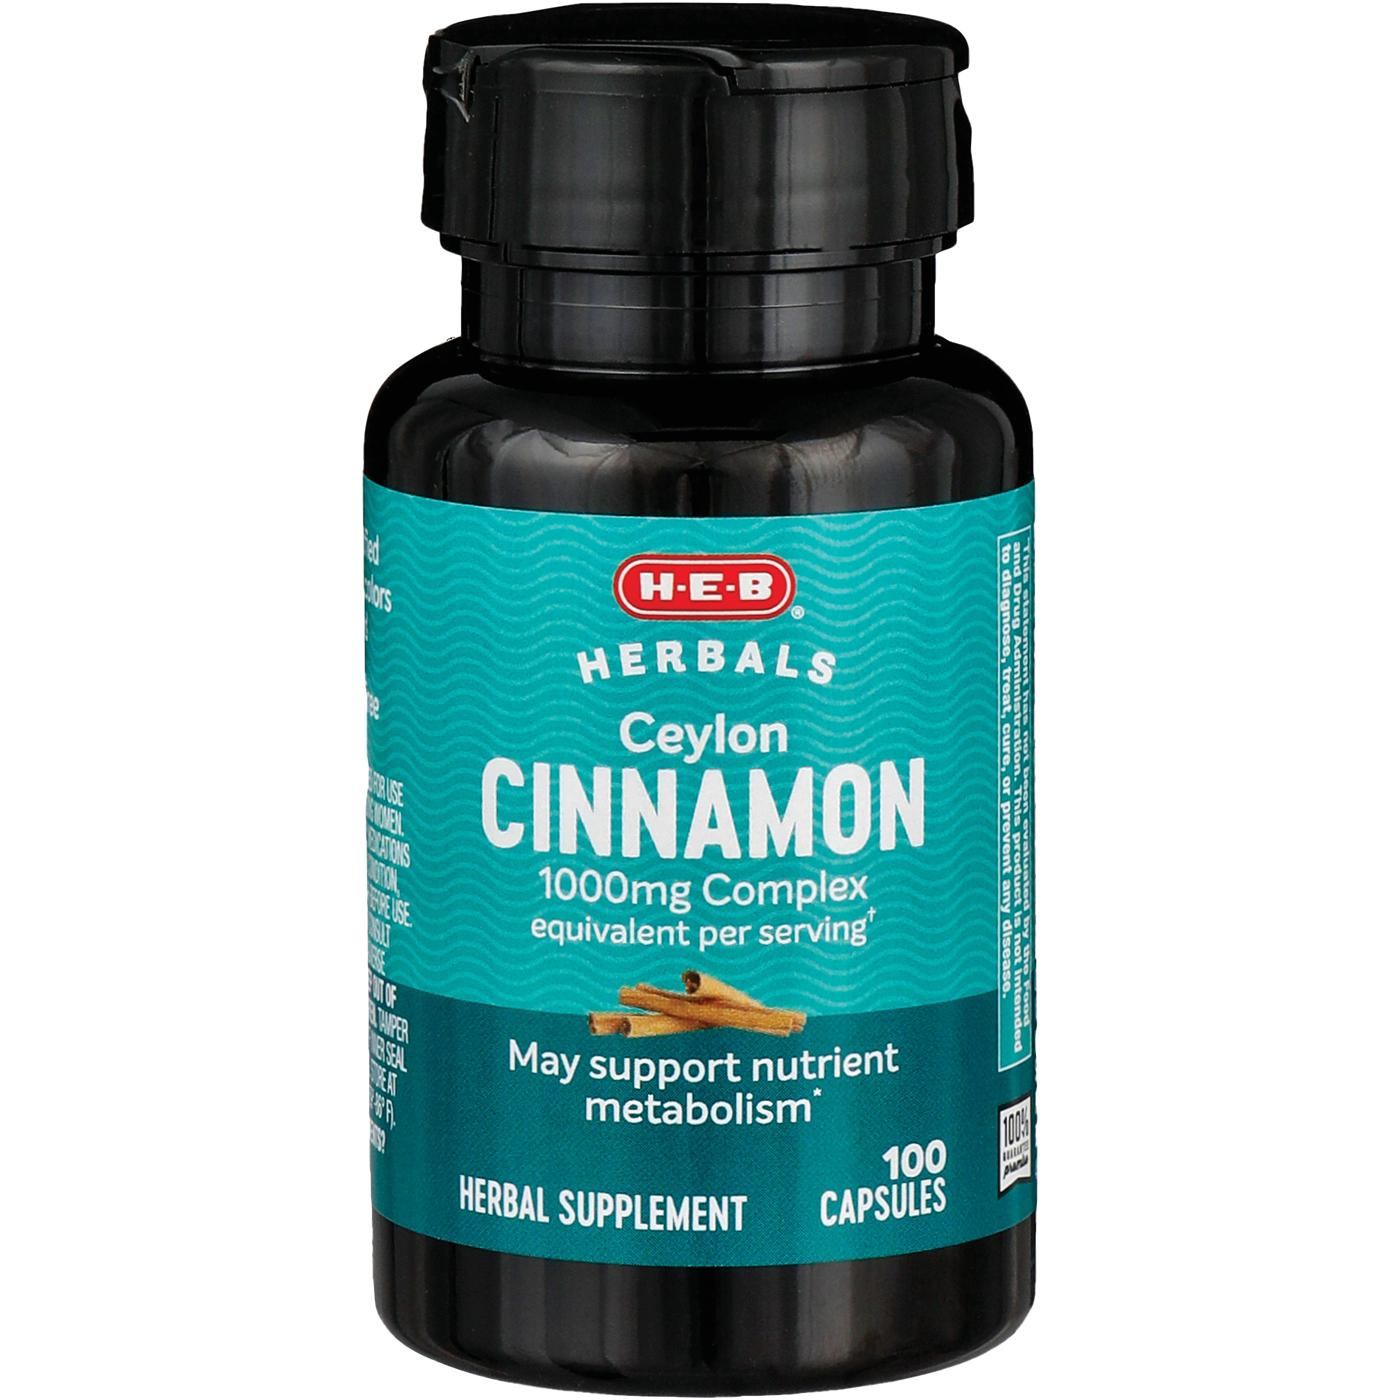 H-E-B Herbals Ceylon Cinnamon Capsules - 1,000 mg; image 1 of 2